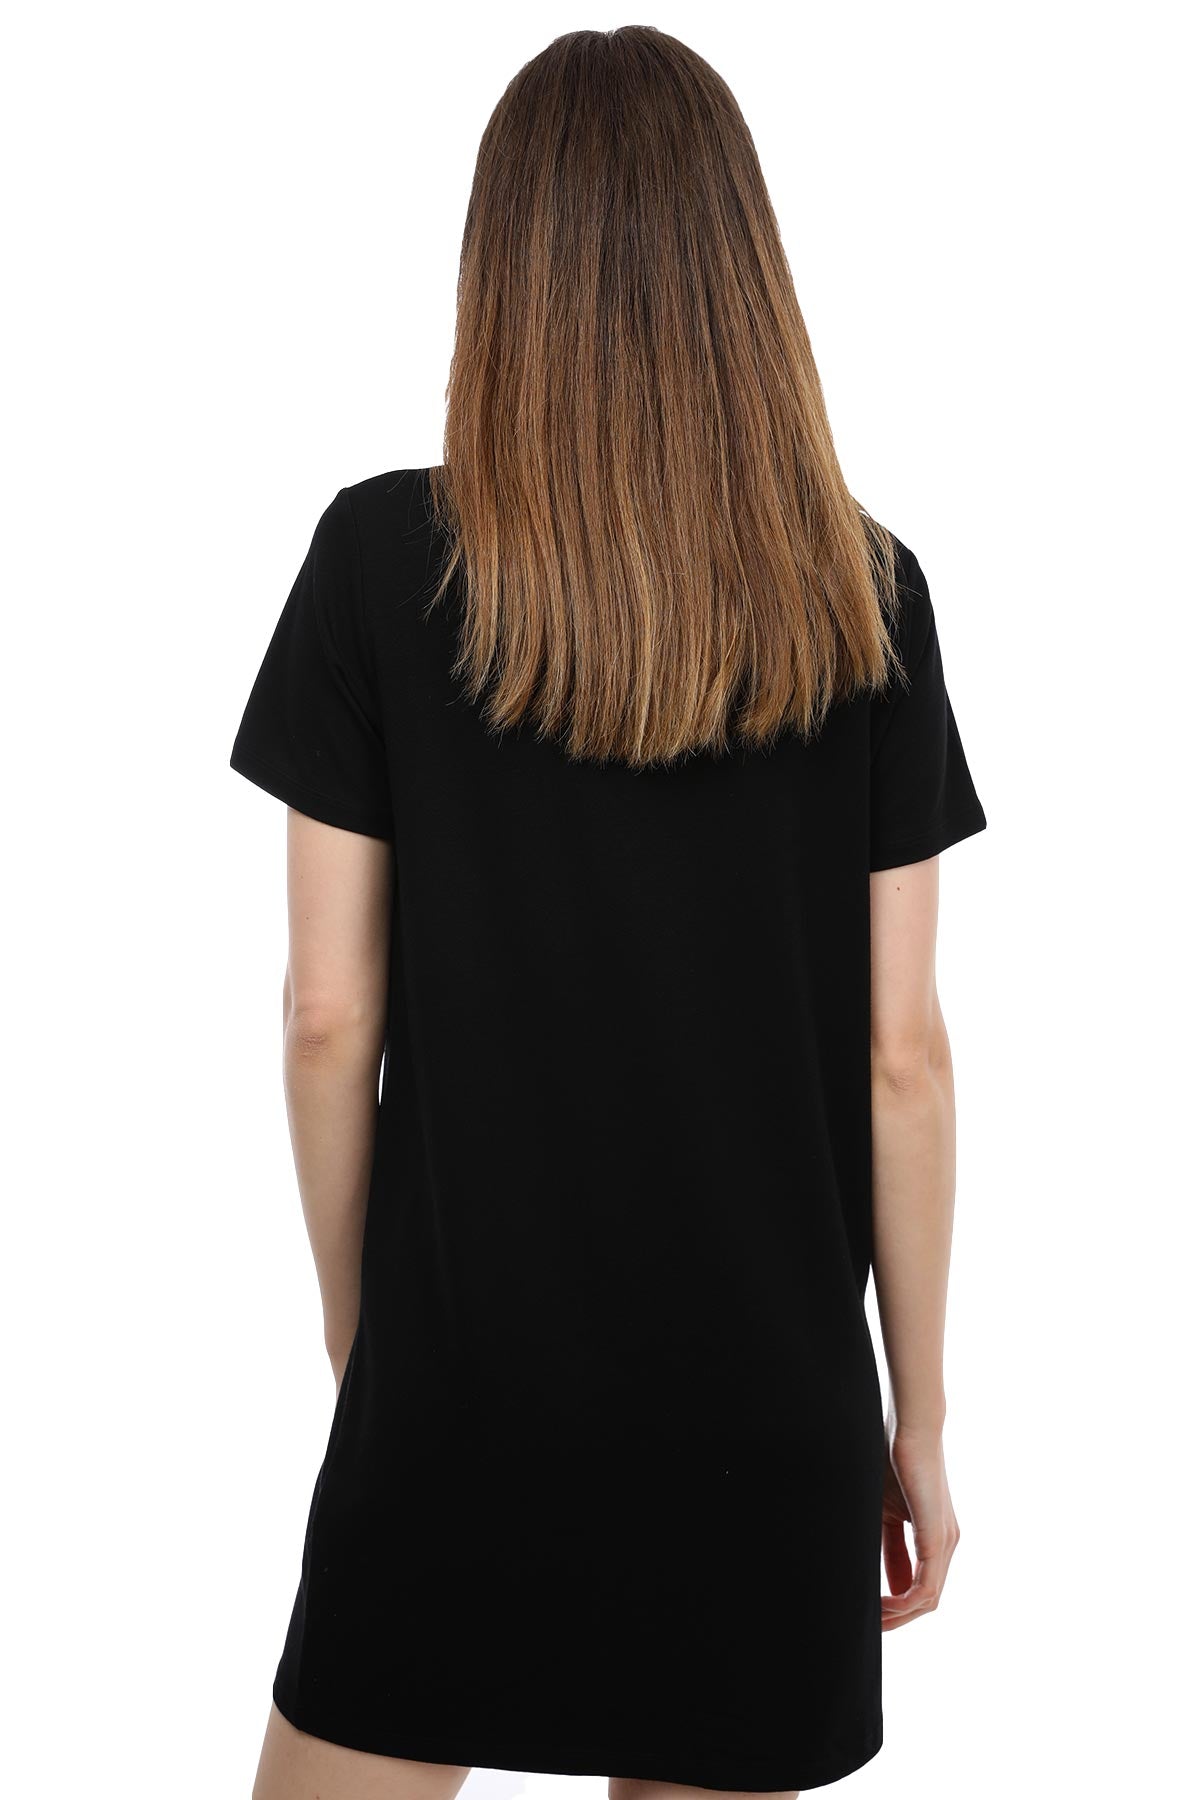 Tru T-shirt Elbise-Libas Trendy Fashion Store